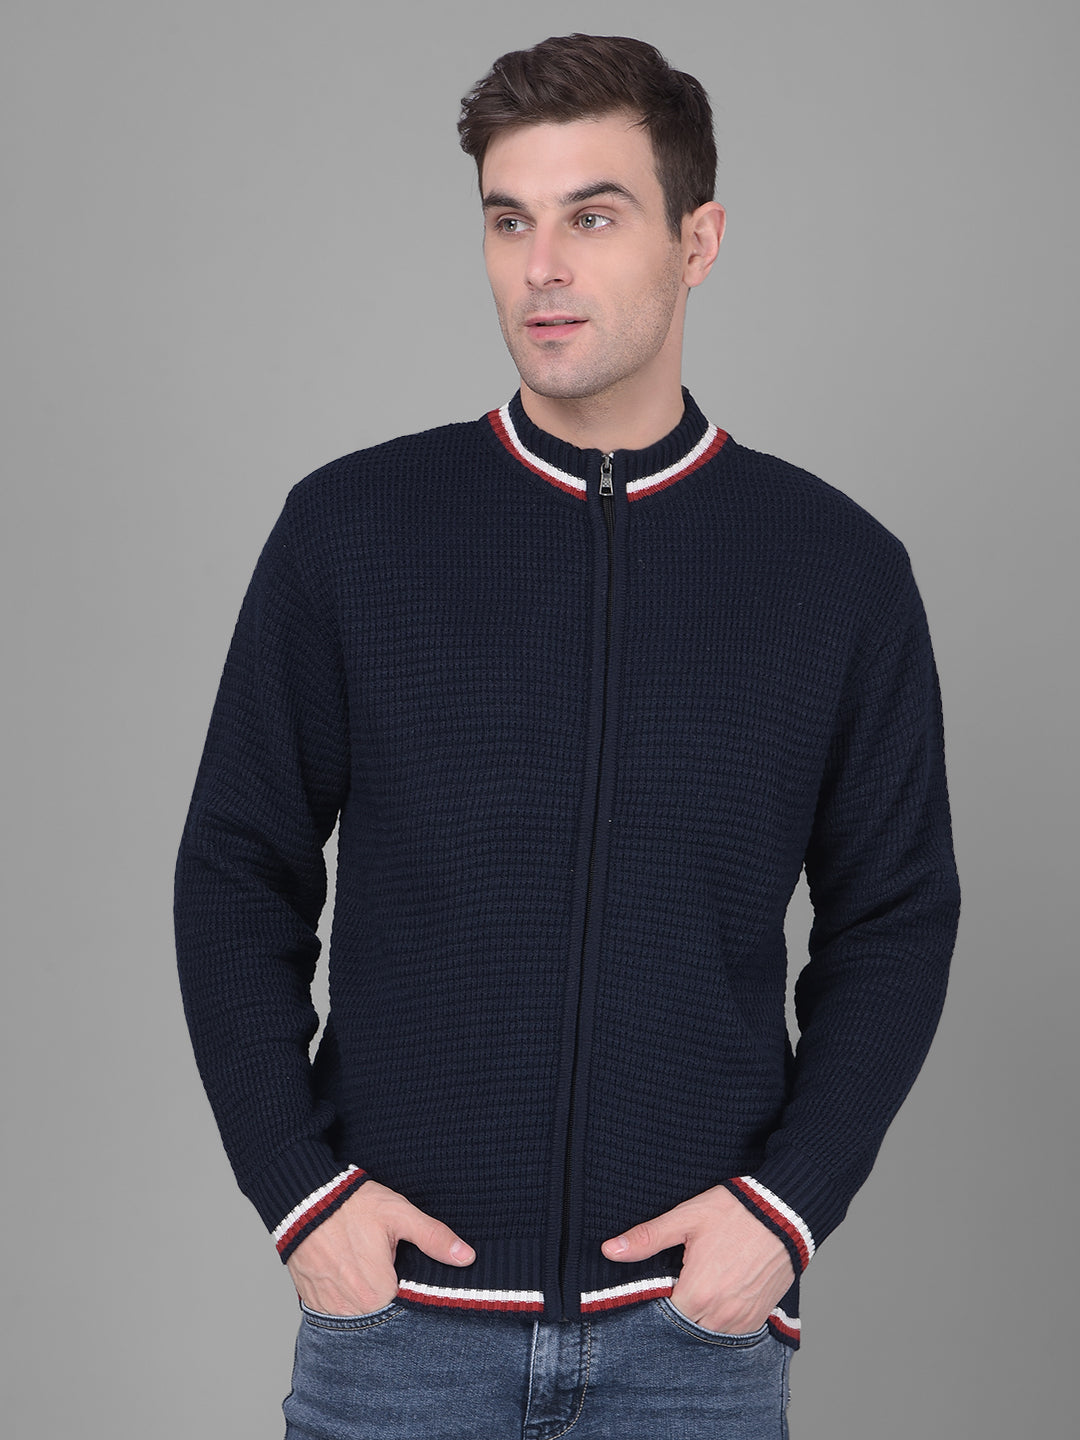 cobb solid navy blue high neck zipper sweater